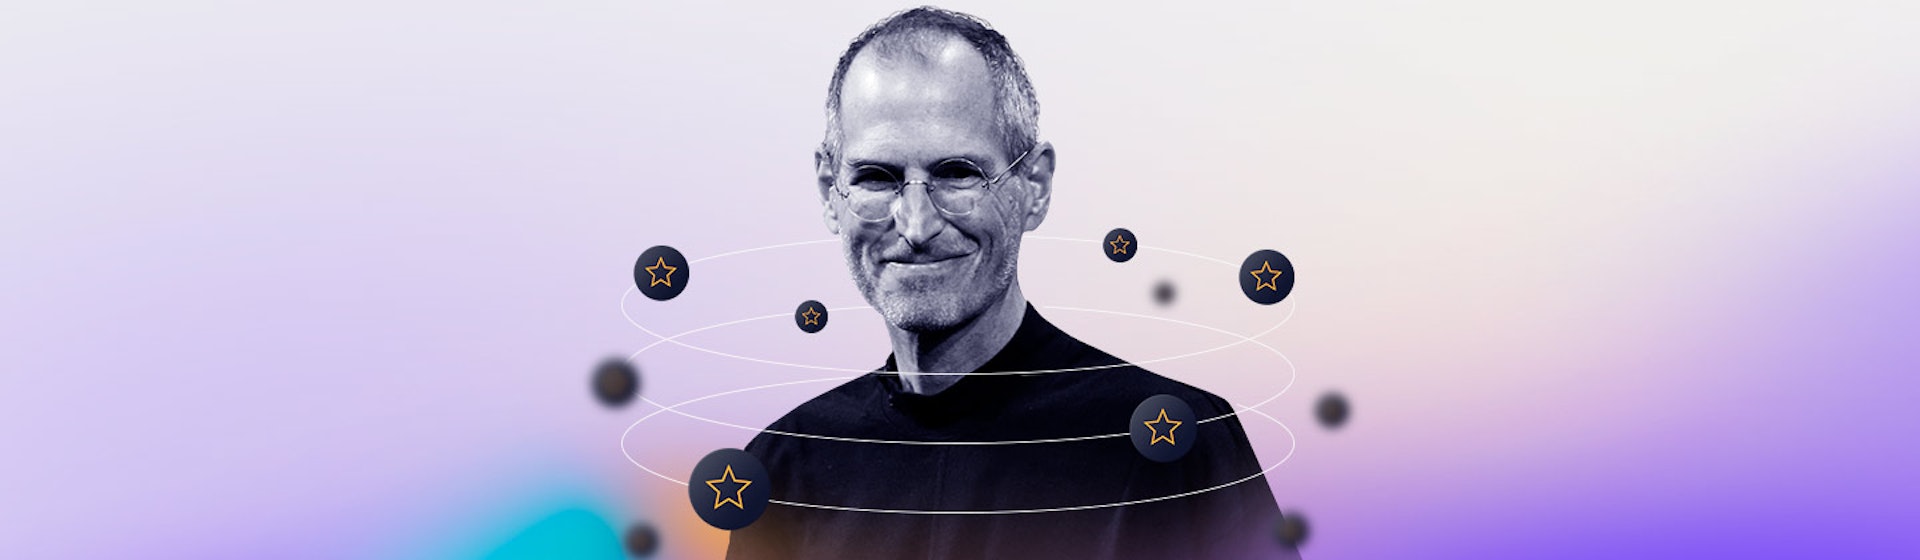 Los 5 grandes consejos de Steve Jobs para mejorar la productividad, la creatividad y el liderazgo